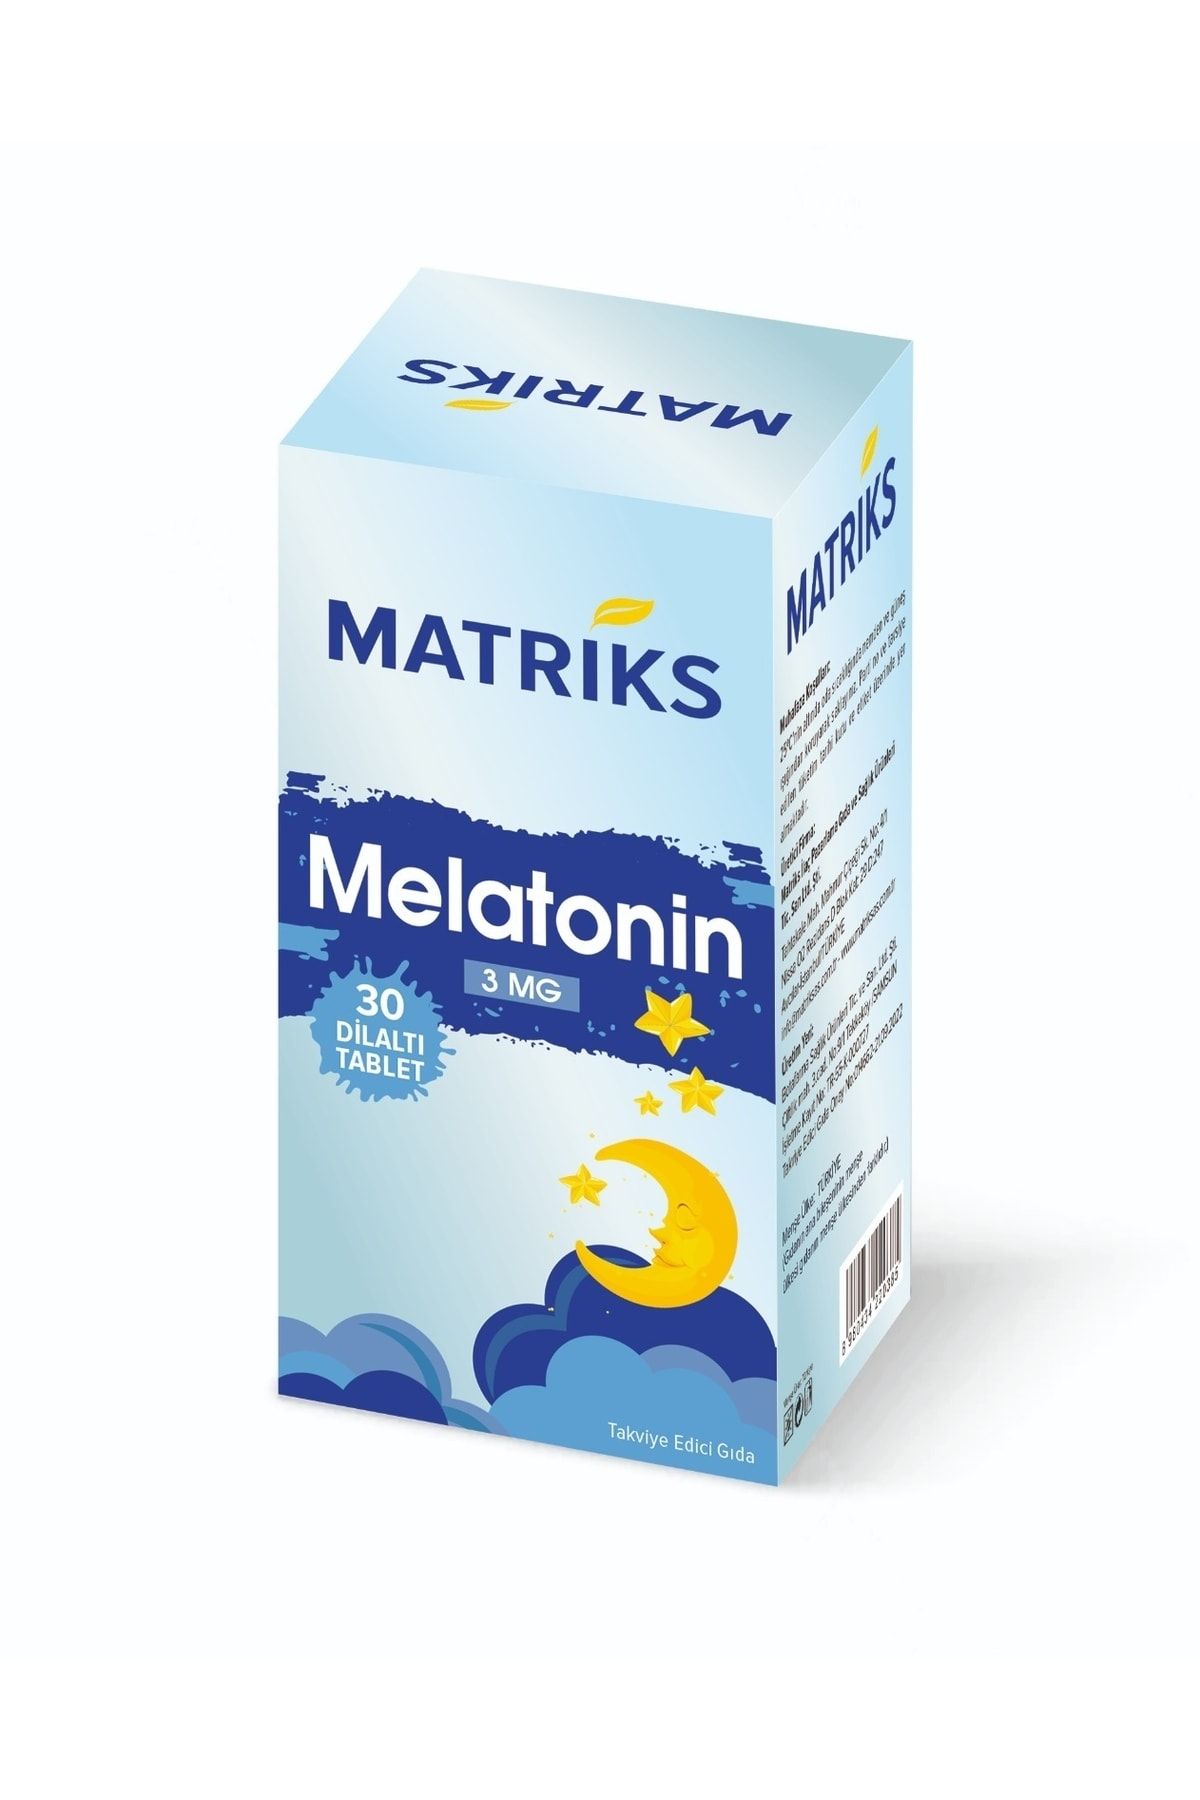 Matriks Melatonin 30 Dil Atı Tablet